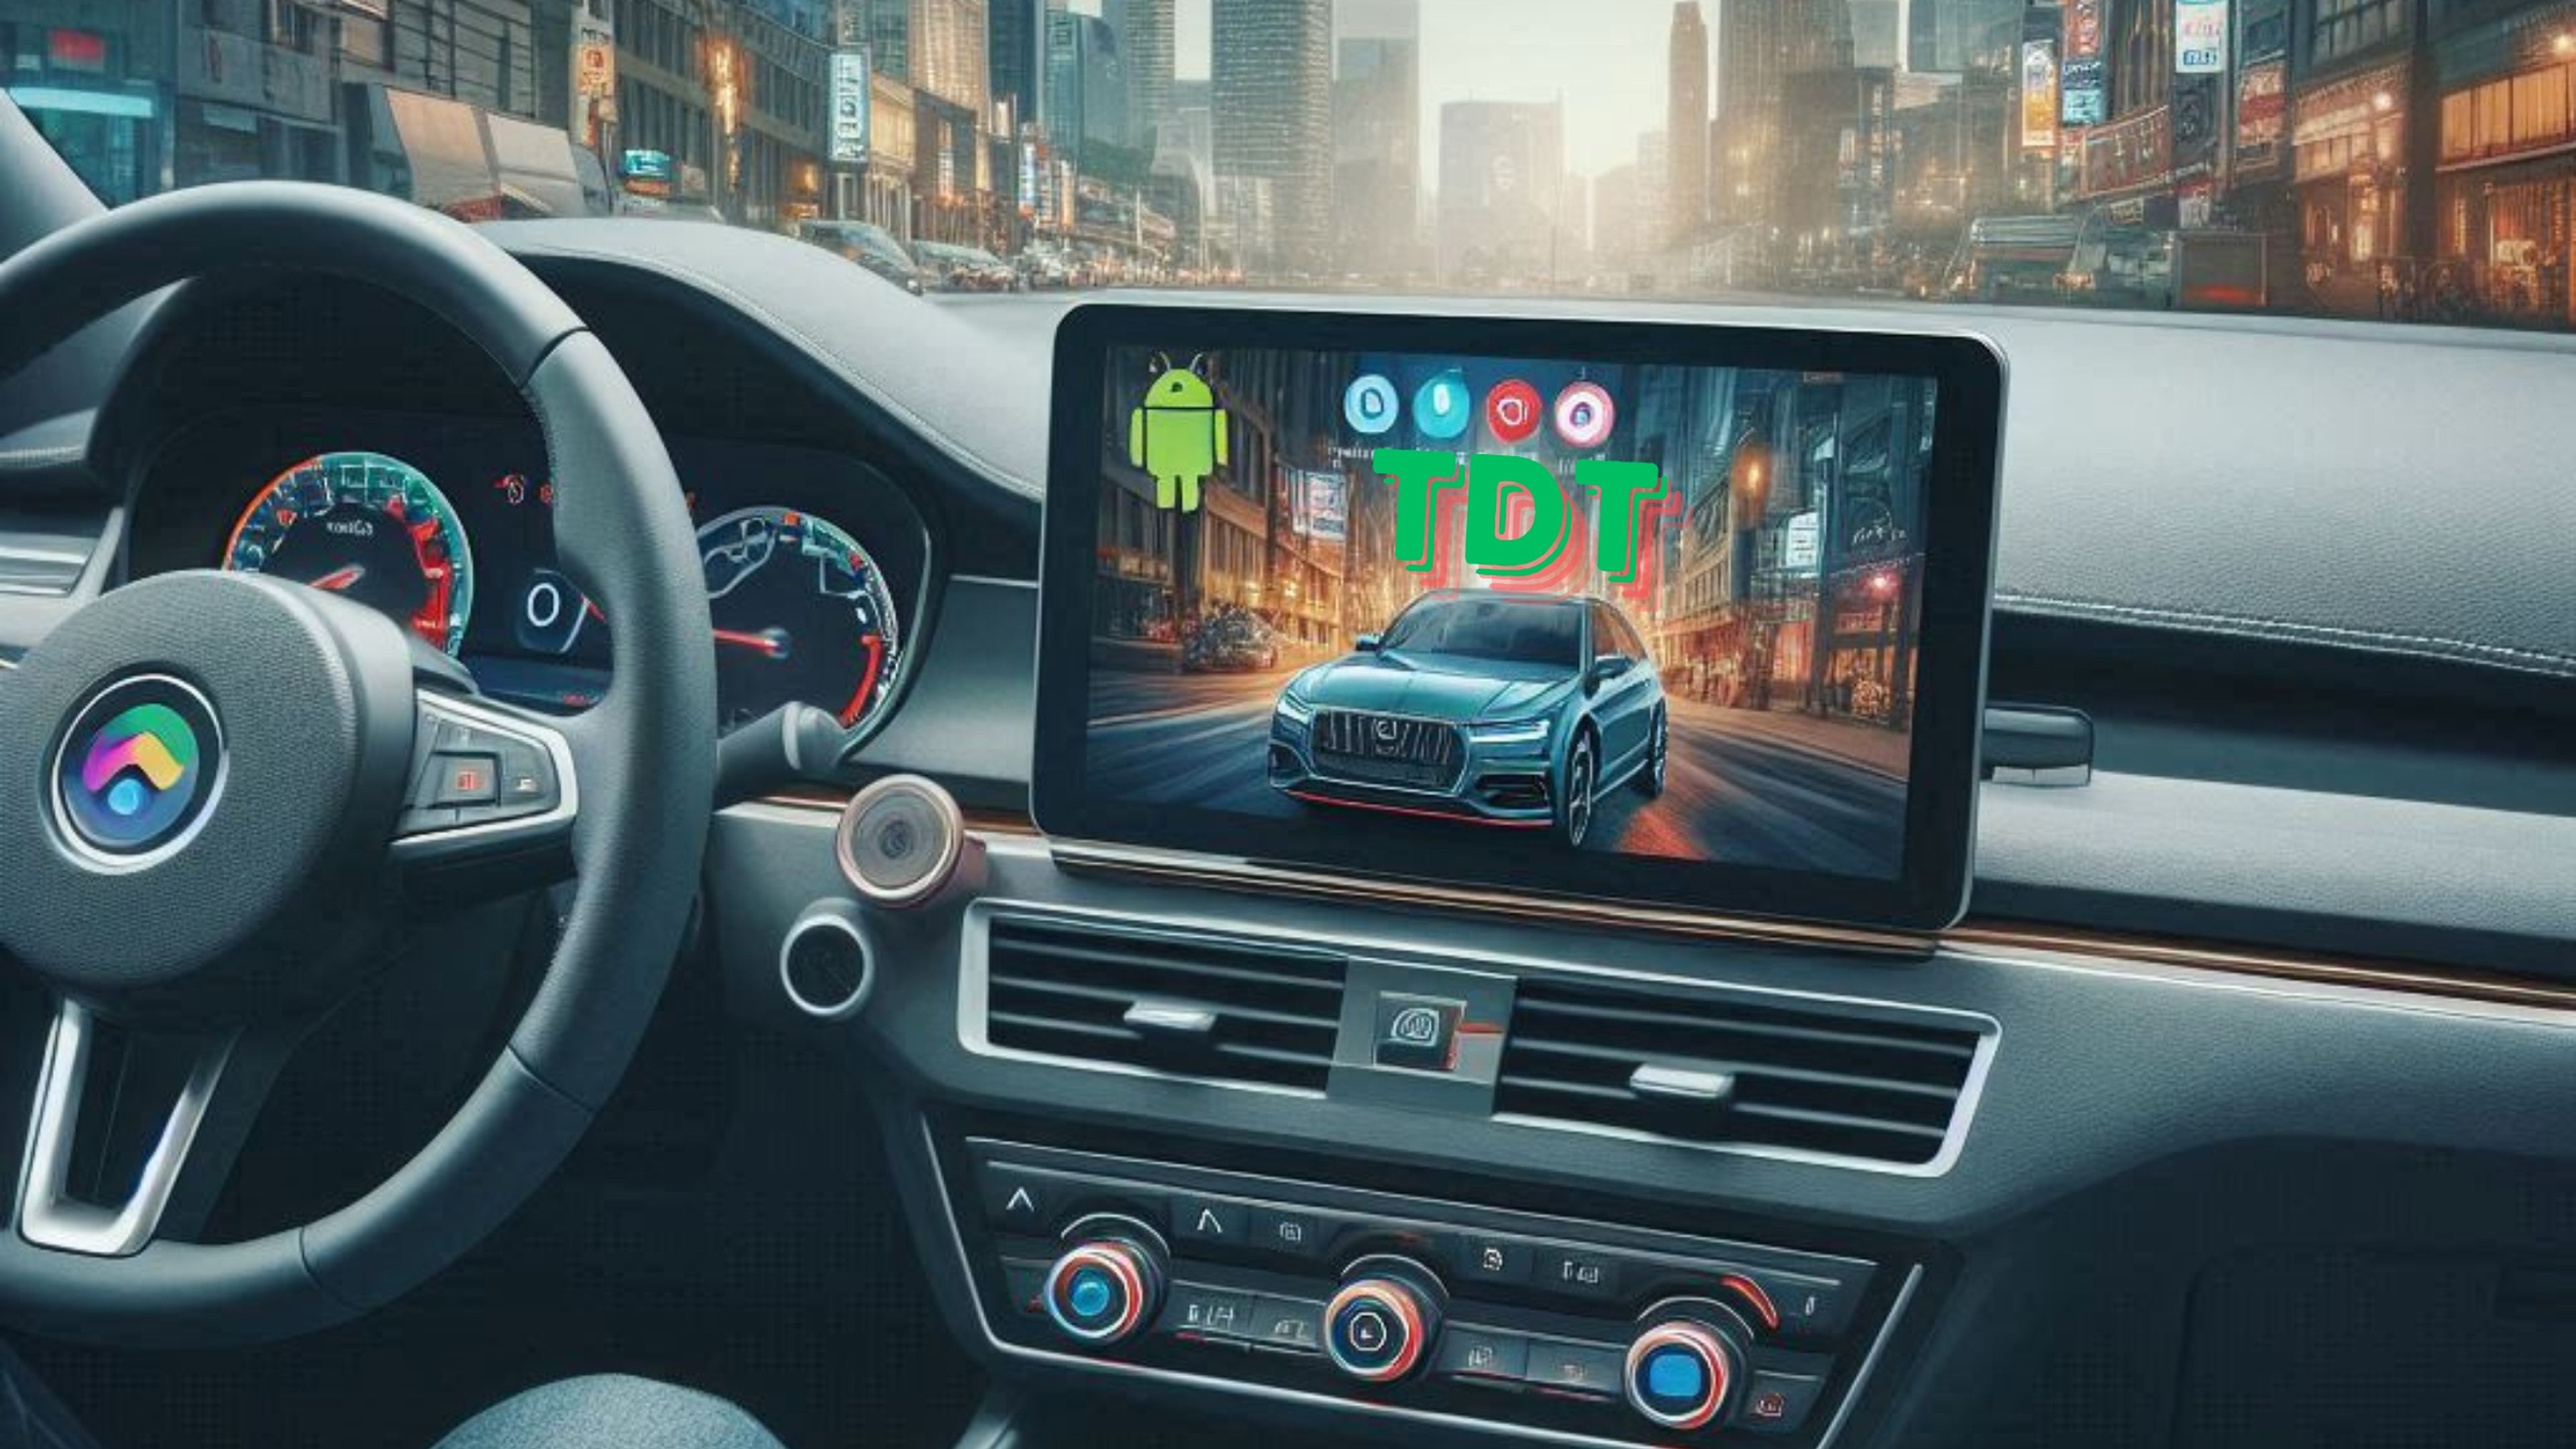 Cómo ver la TDT en la pantalla del coche con Android Auto